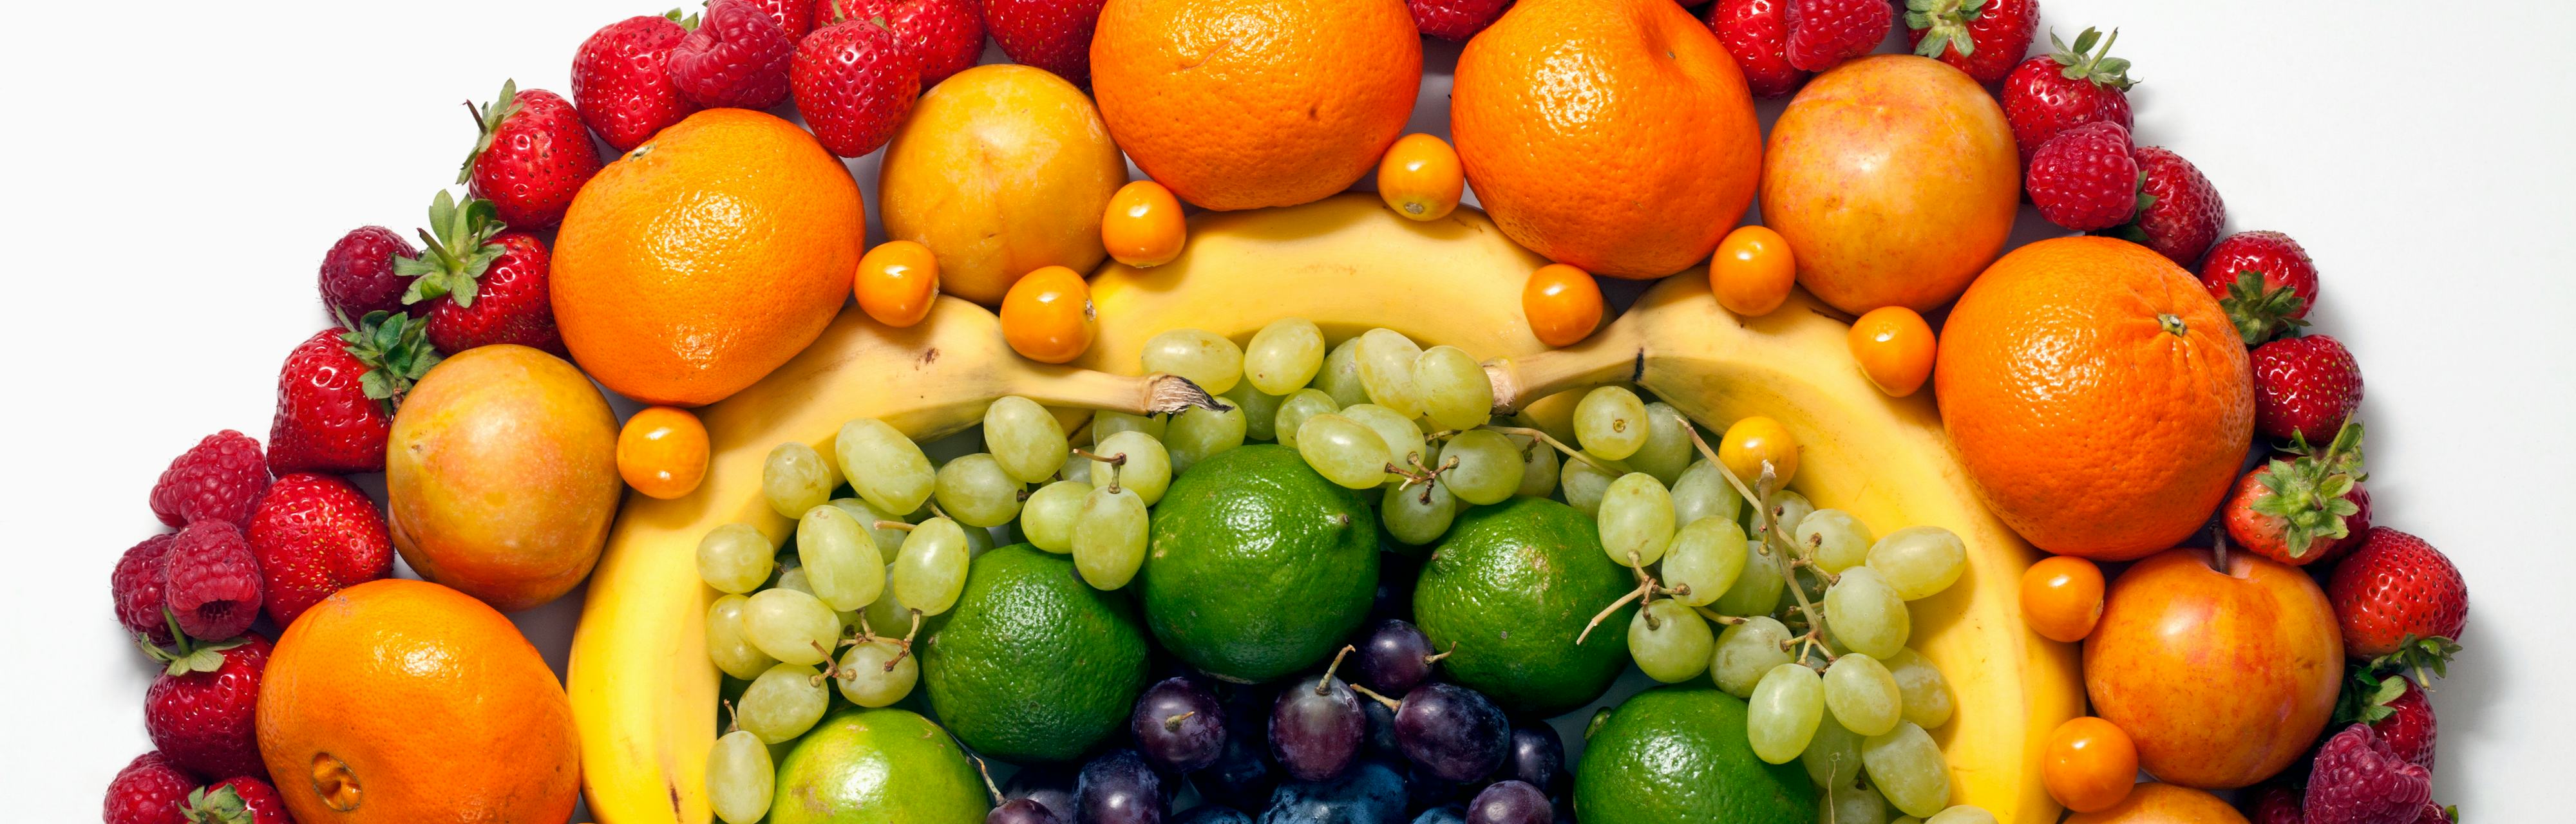 Плей ми фруктовый. Овощи и фрукты. 5 Цветов овощей. Натуральные витамины в виде фруктов. Круг из овощей и фруктов.